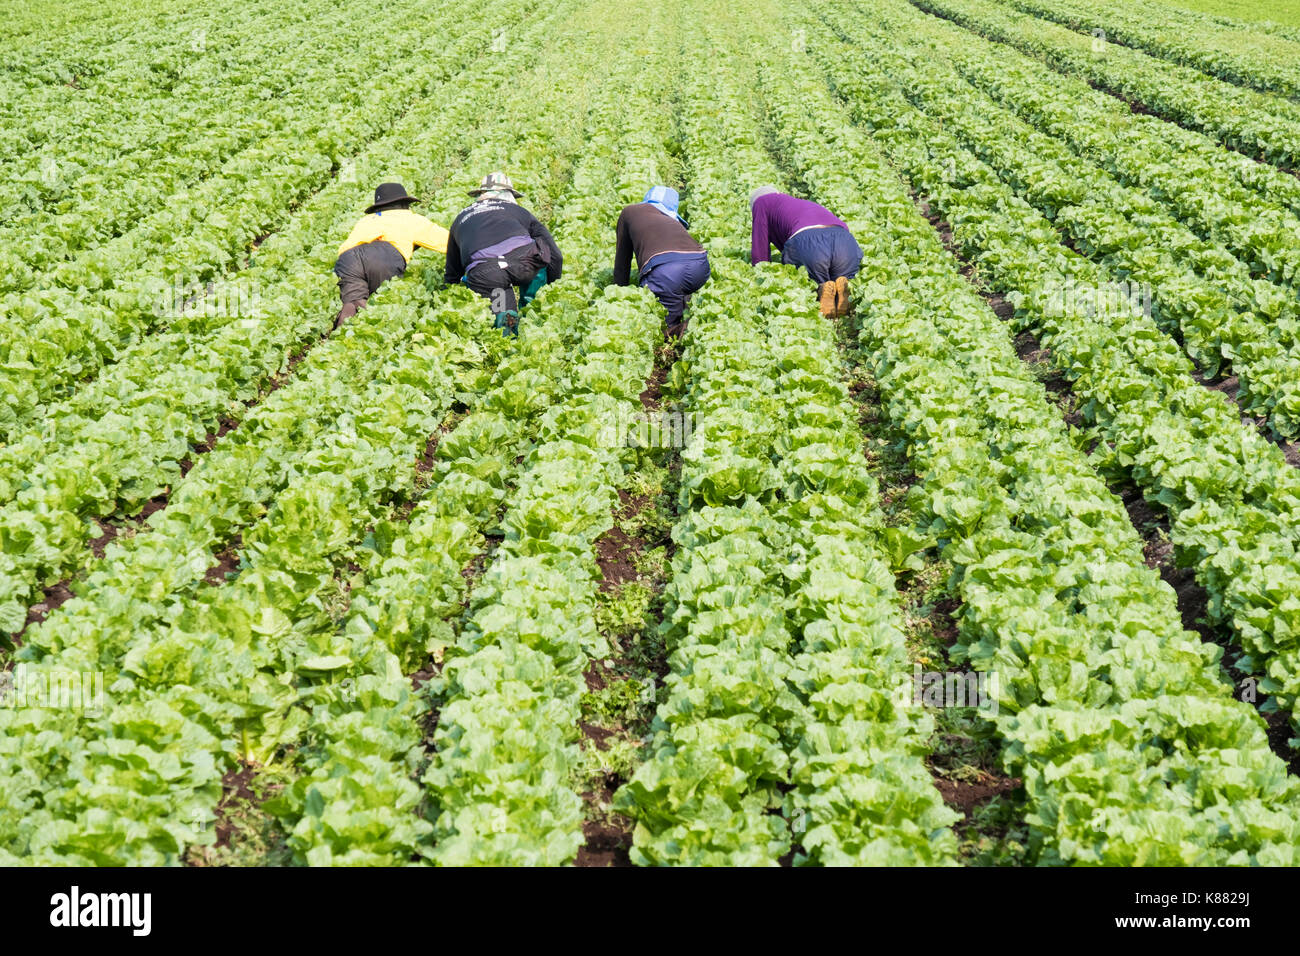 La récolte La récolte de salades à l'agriculture et de la salade de céleri,onios par les travailleurs migrants, près de Toronto, Ontario, Canada, à Holland Marsh Banque D'Images